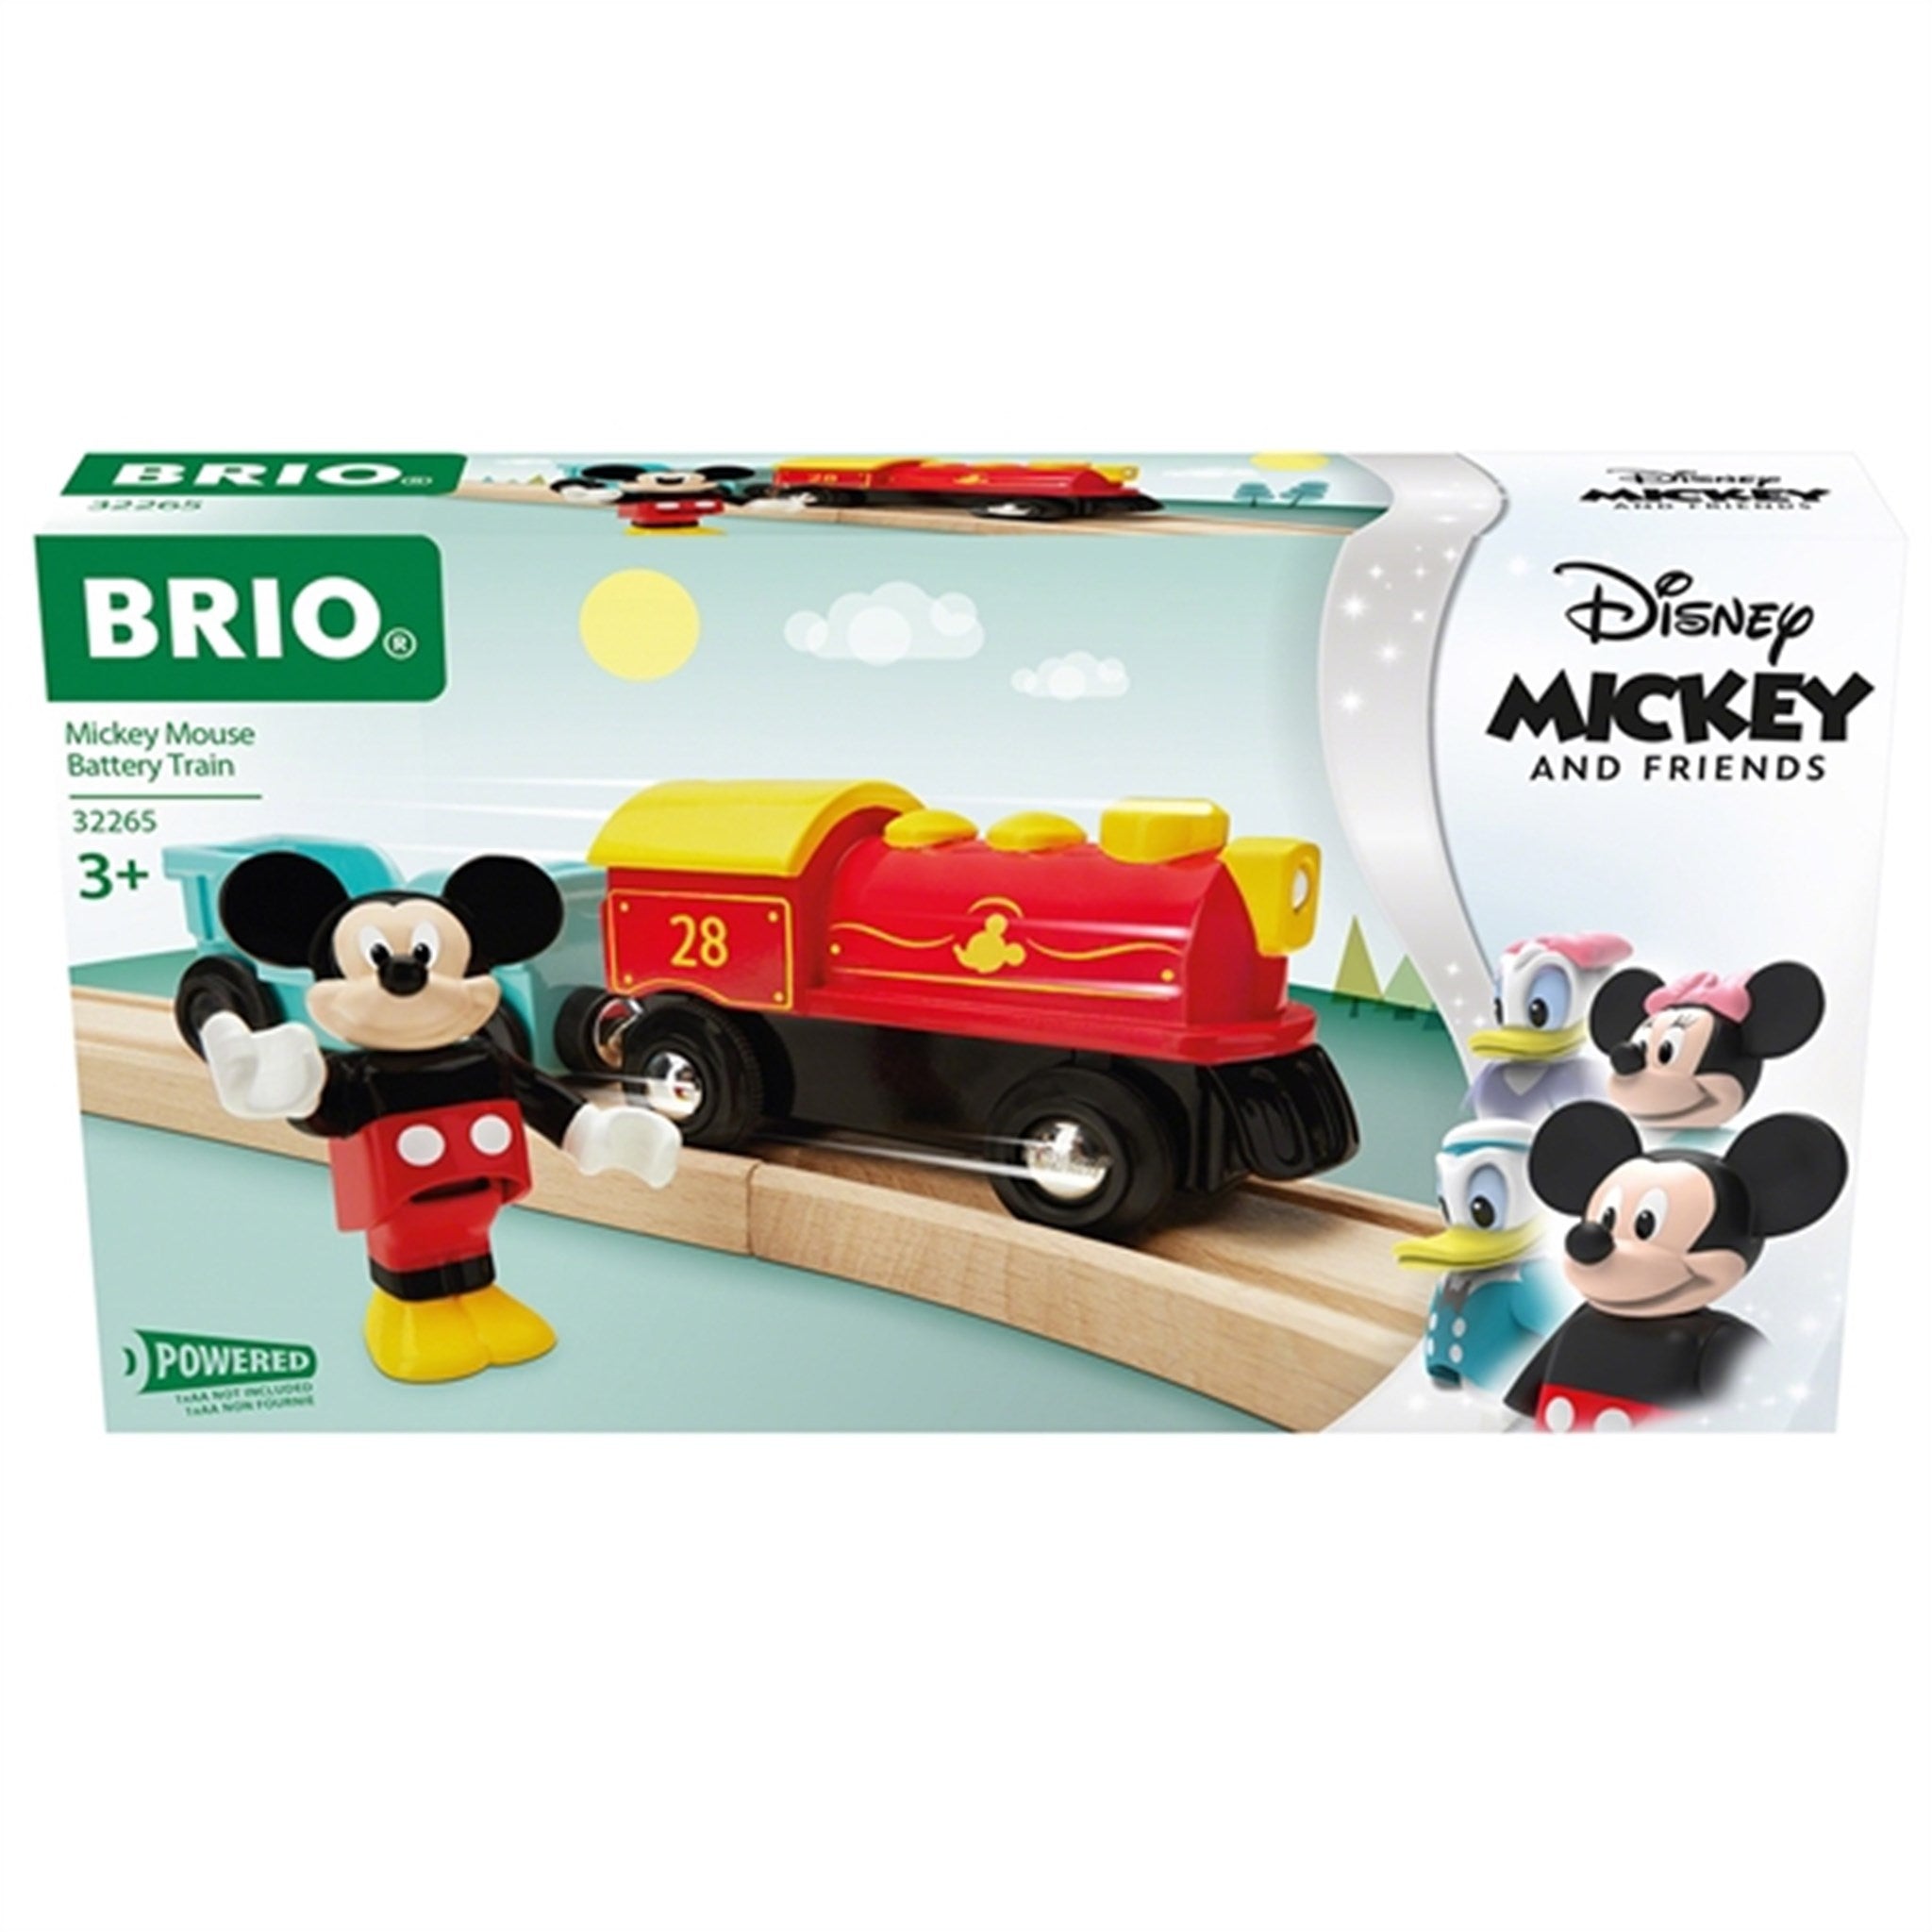 BRIO® Mickey Mouse Battery Train 2